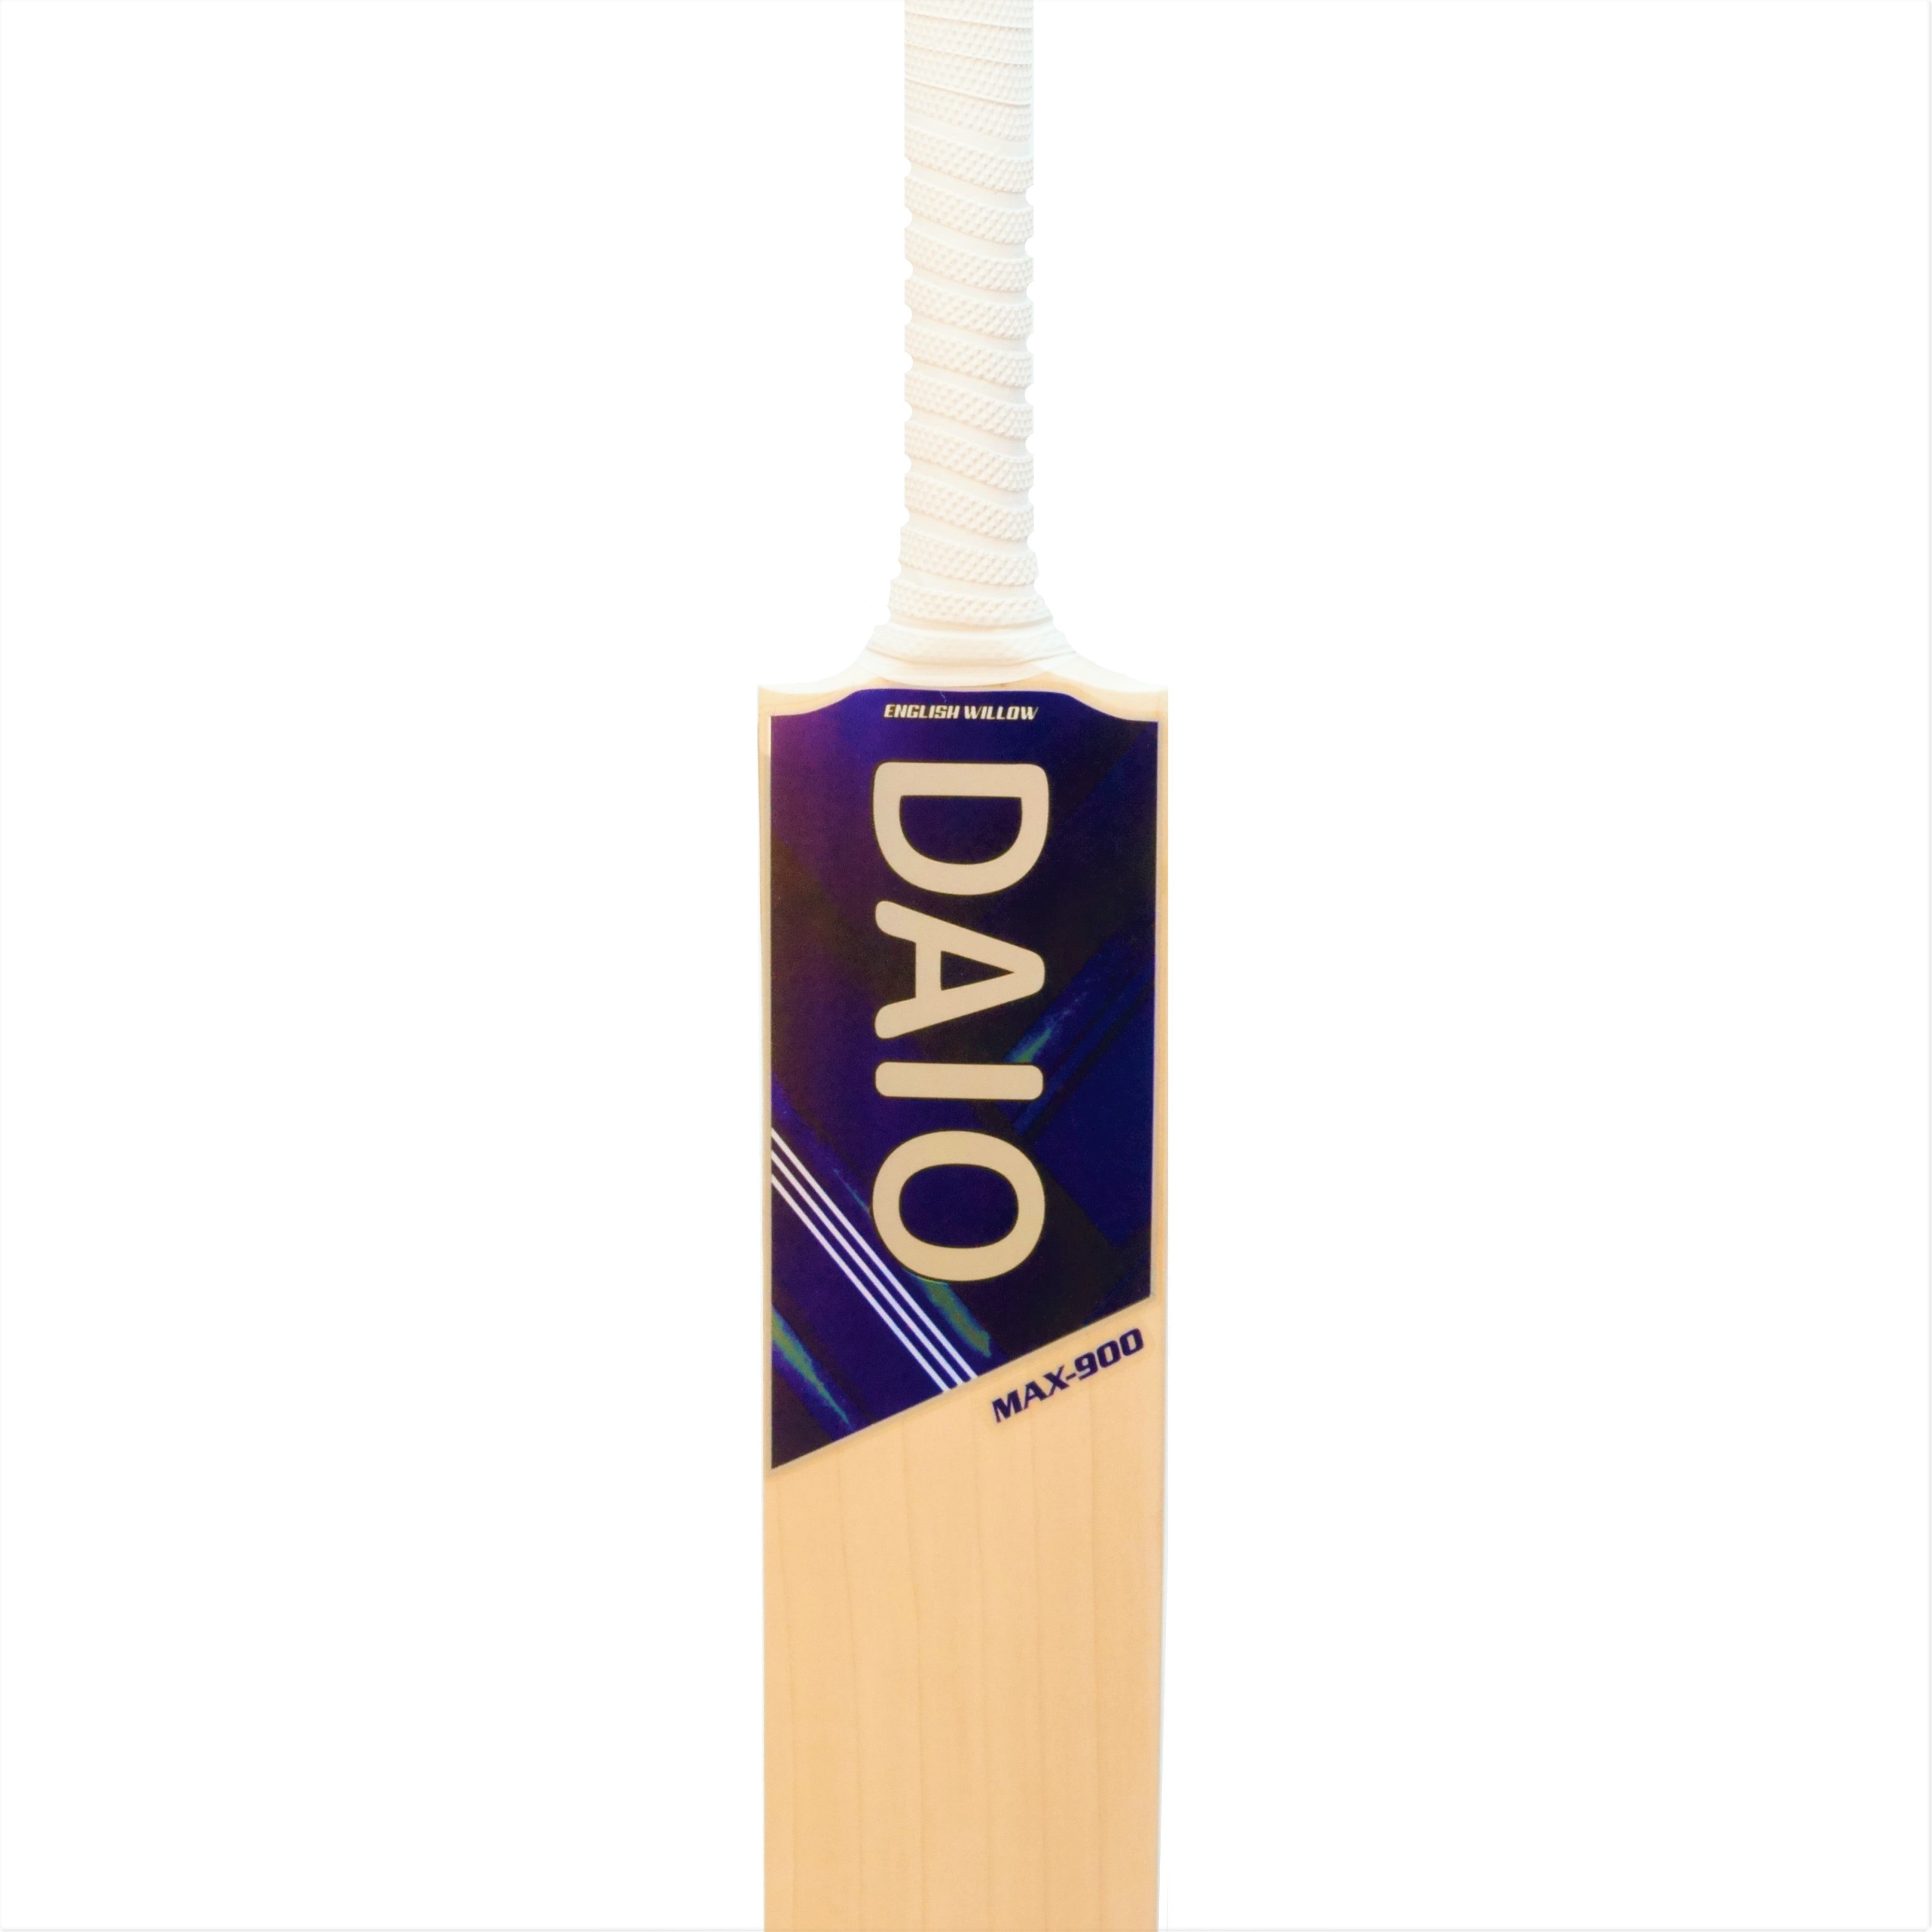 Daio Max-900 English willow cricket bat